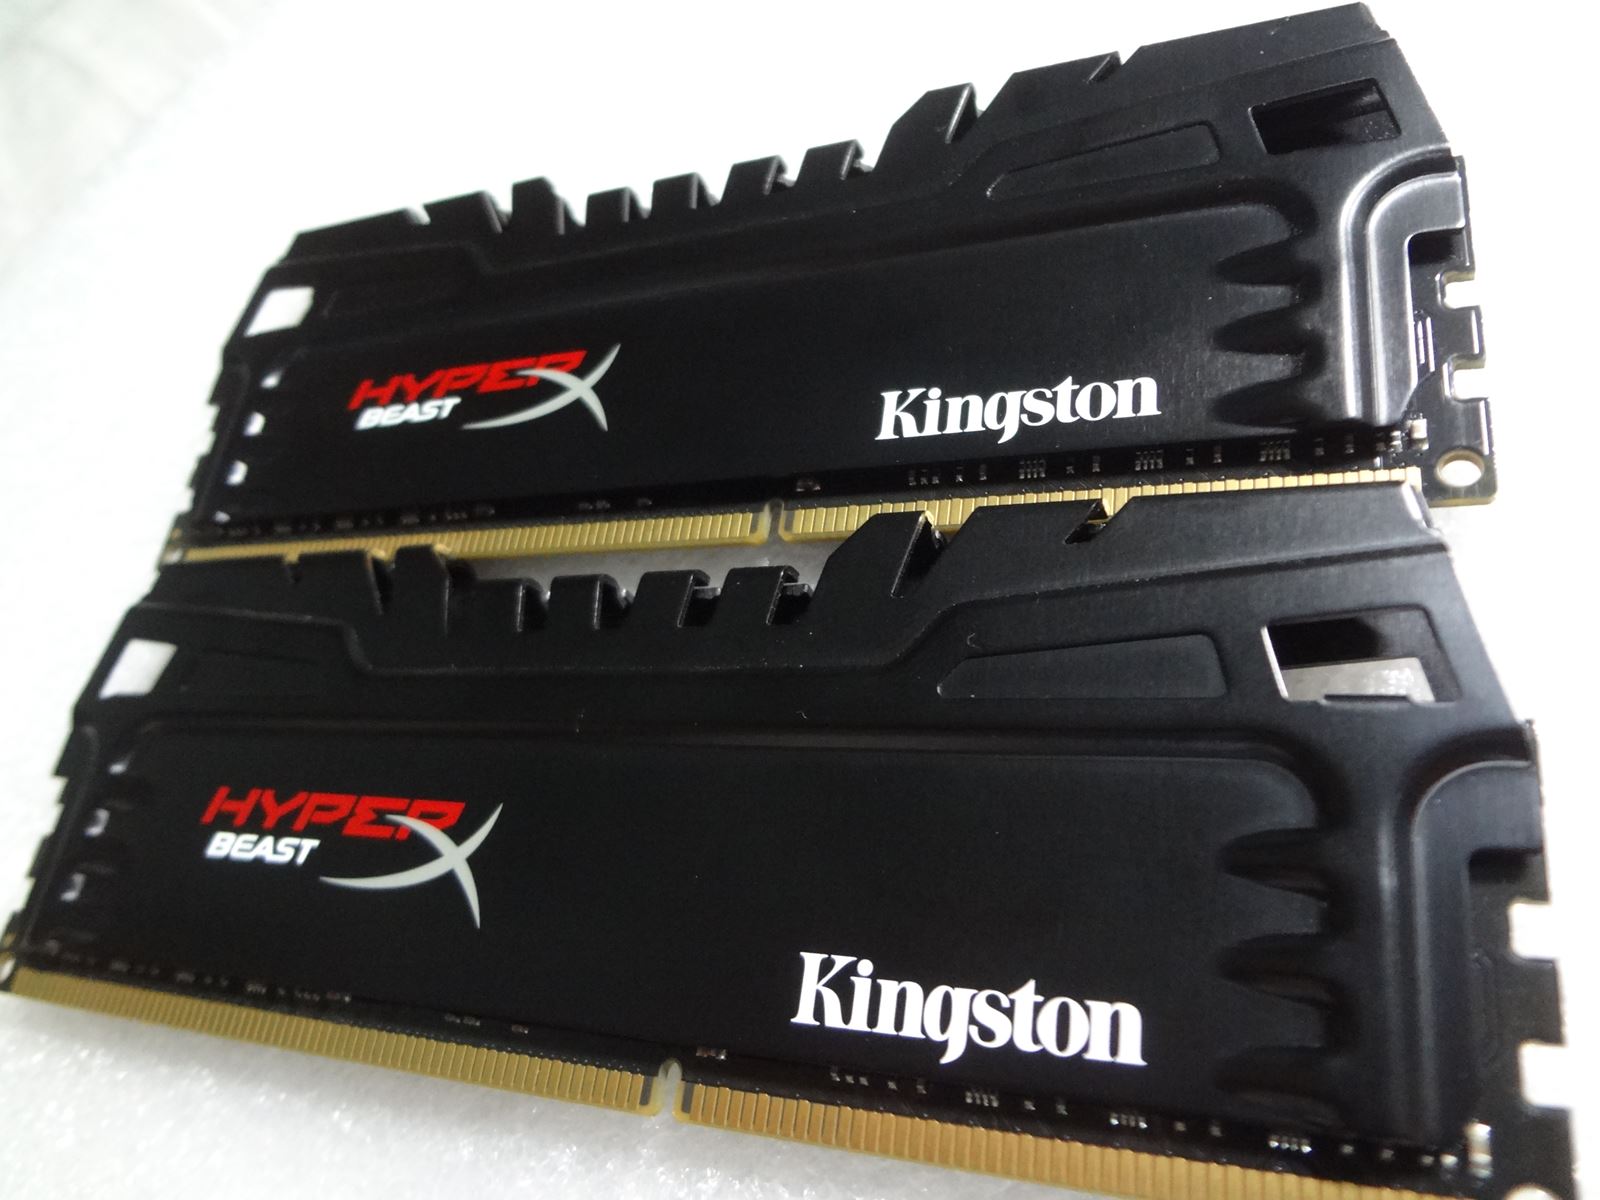 Kingston chính thức gửi bộ nhớ DDR5 đến các đối tác